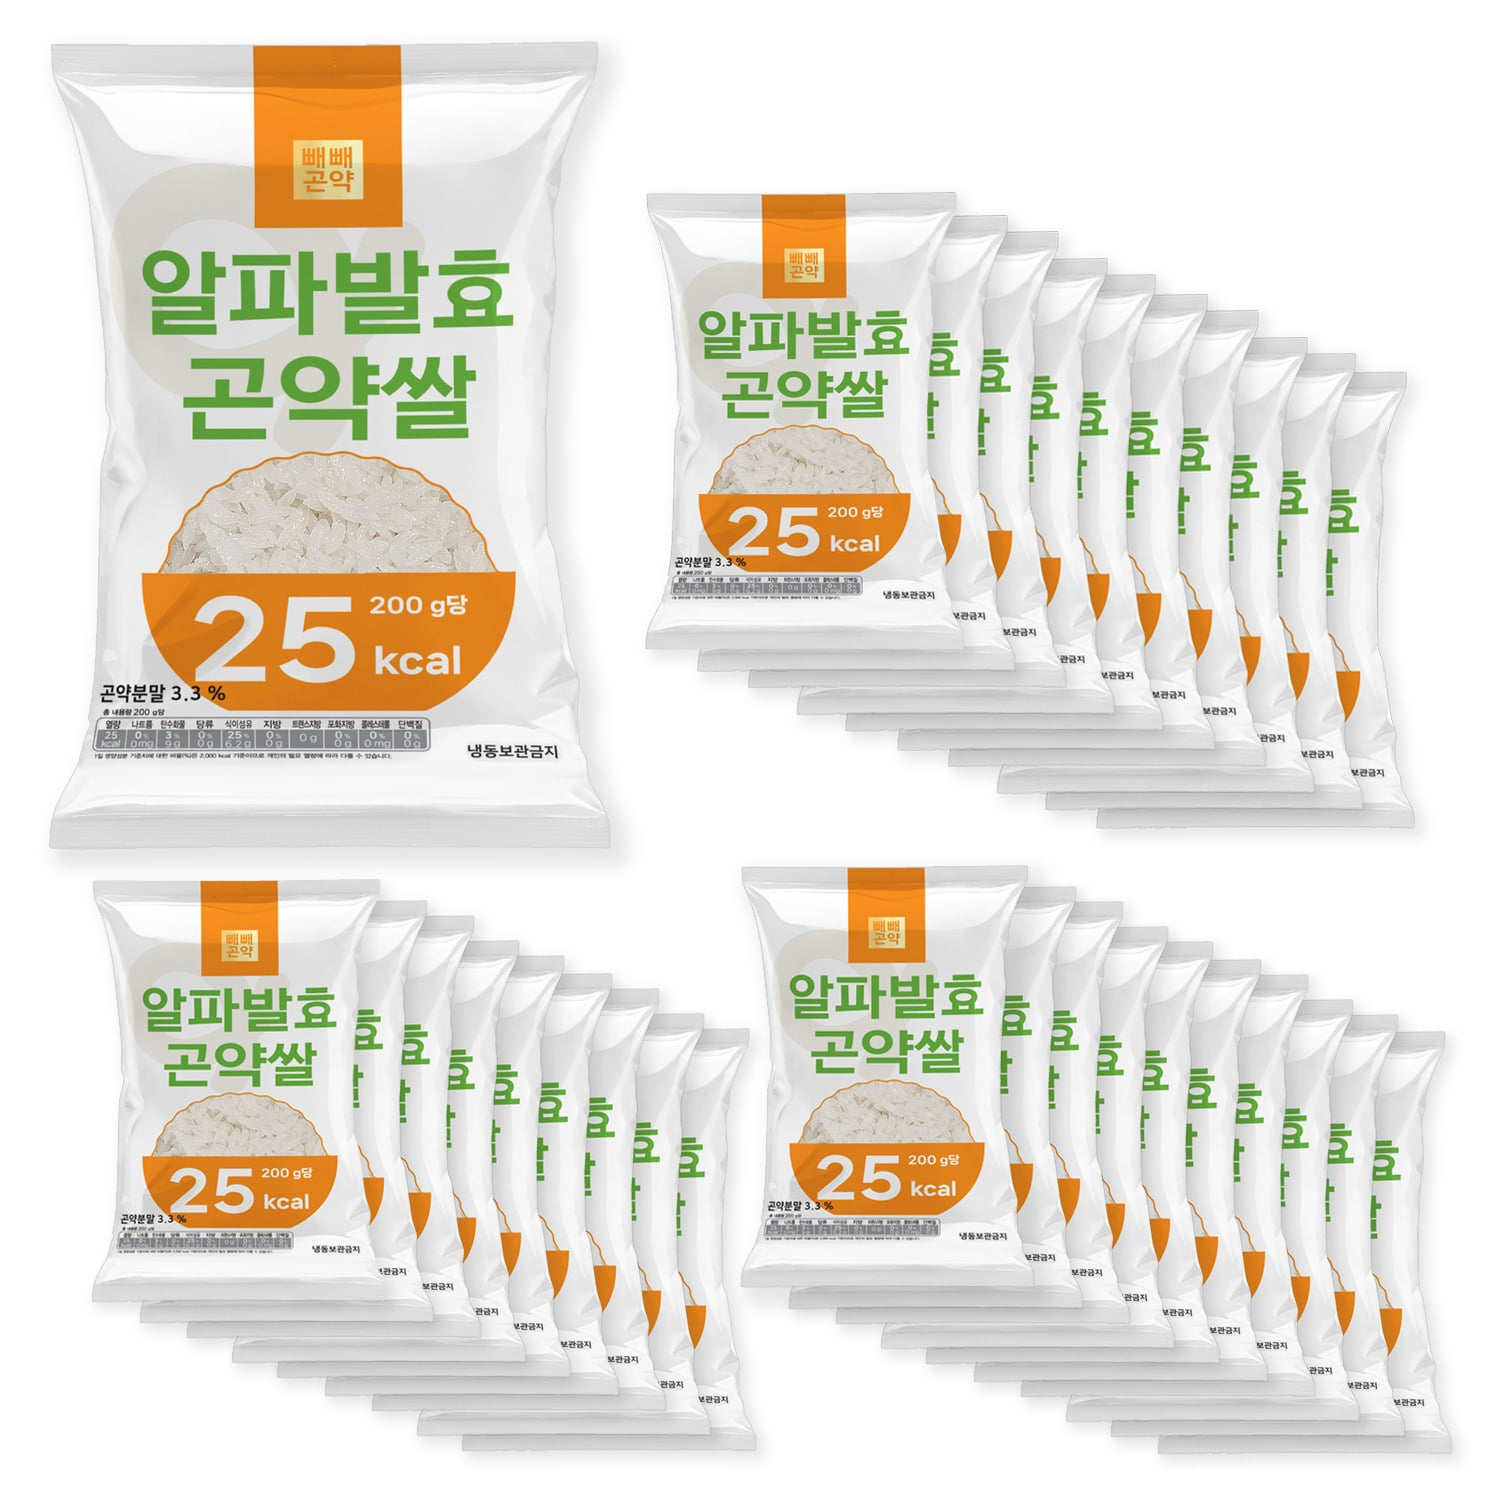 빼빼곤약 알파발효곤약쌀 200g x 30팩 (100g당 12.5kcal)